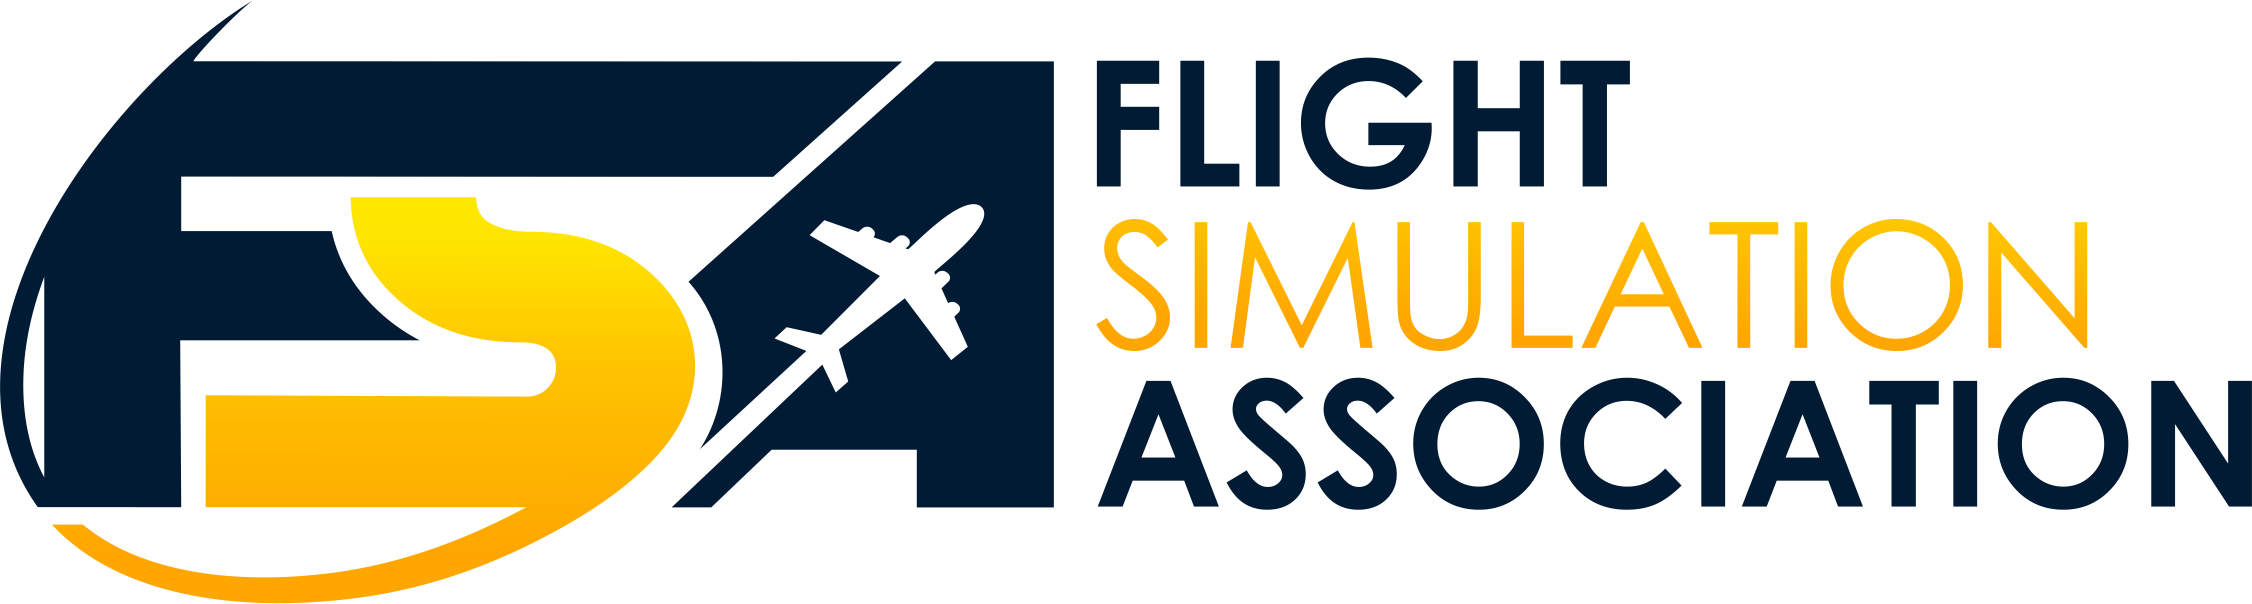 Flight Simulation Association (FSA) Logo